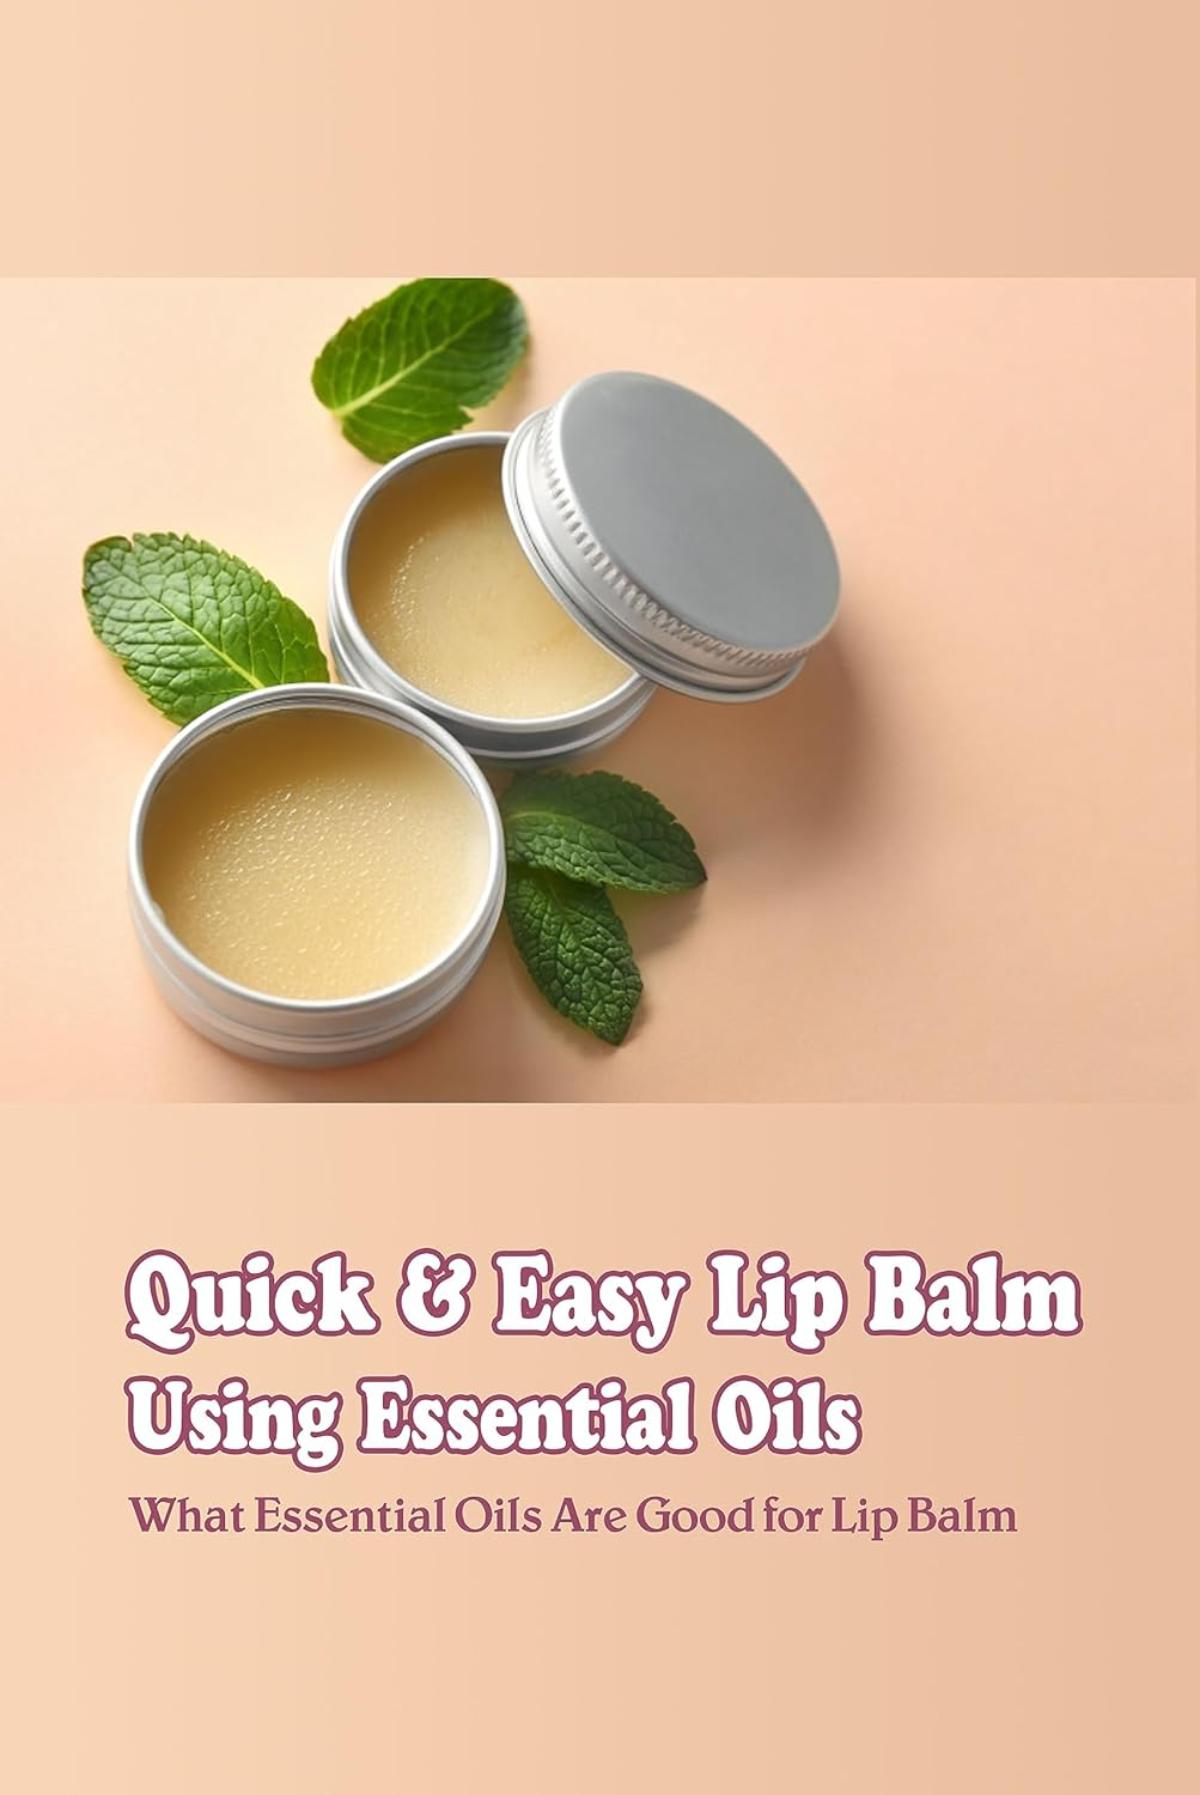 Quick & Easy DIY Lip Balm Using Essential Oils